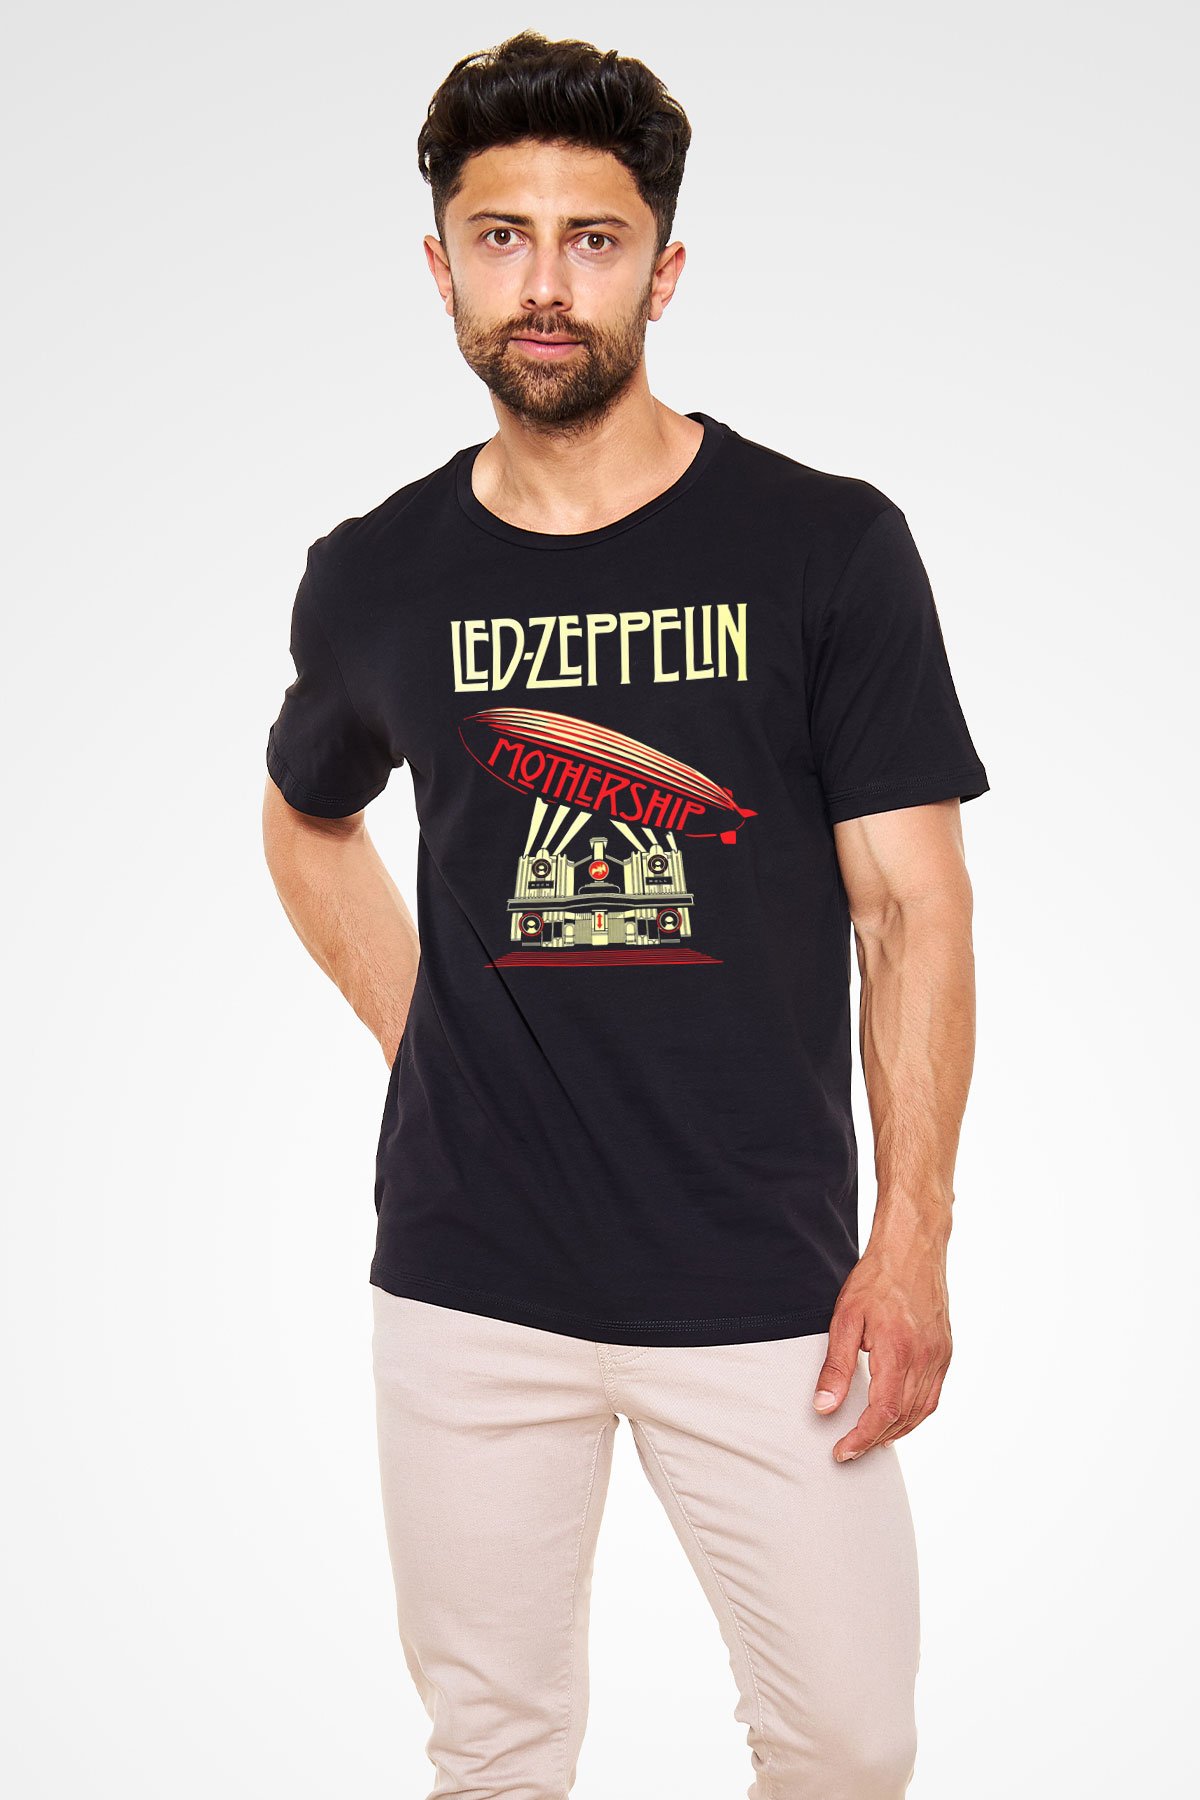 Led Zeppelin Mothership Black Unisex T-Shirt - Tees - Shirts